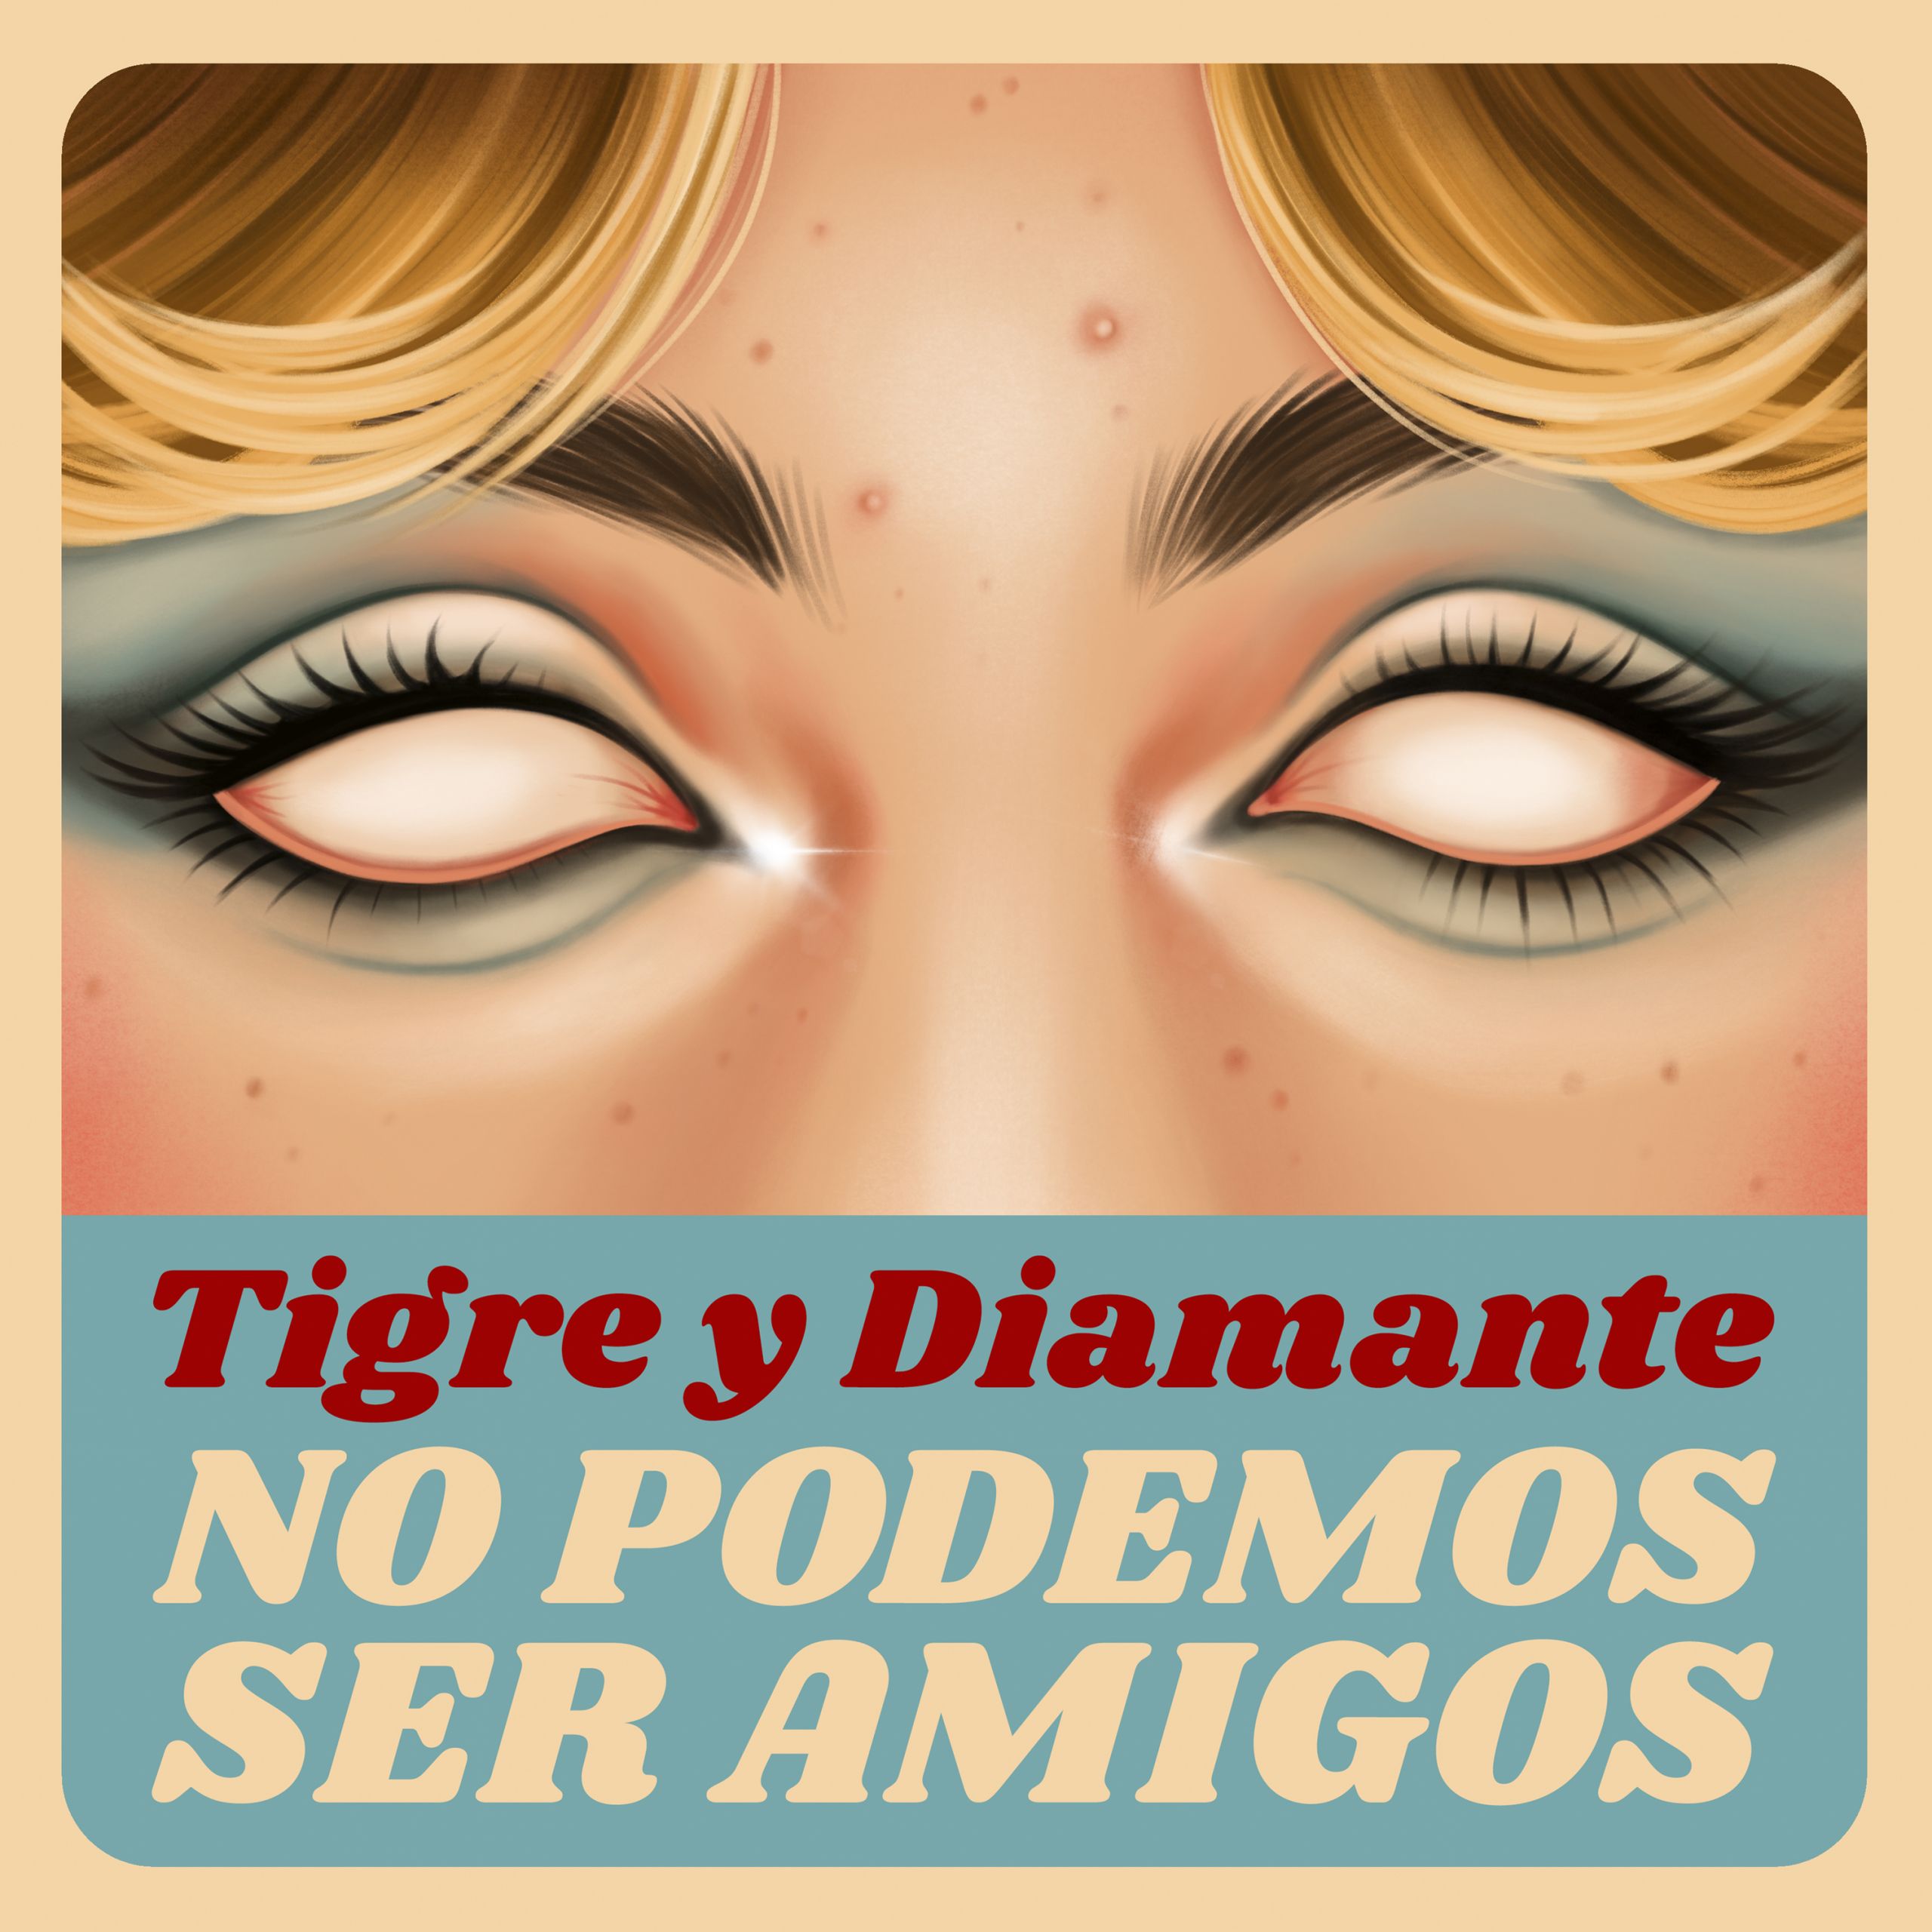 Tigre y Diamante "No podemos ser amigos", nuevo single